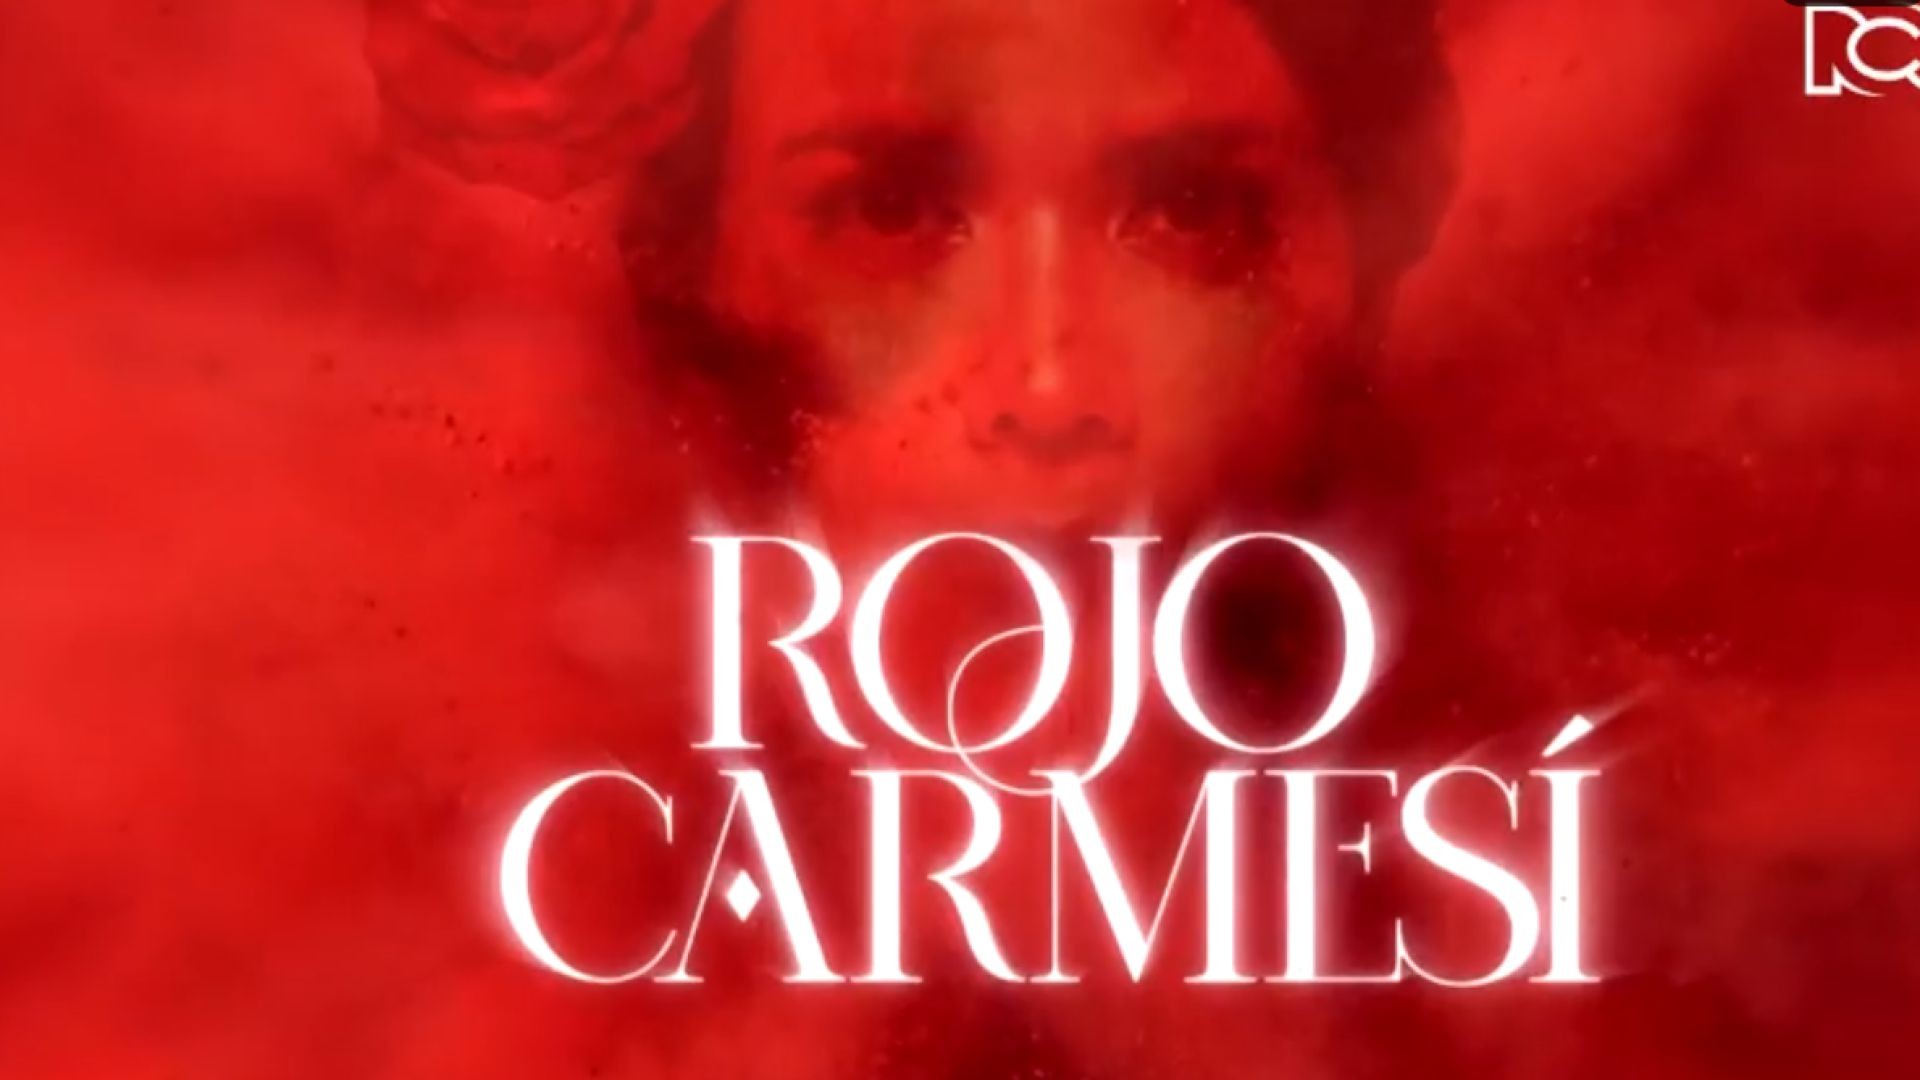 Rojo Carmesí Capitulo 9 Completo - Rojo Carmesí telenovela